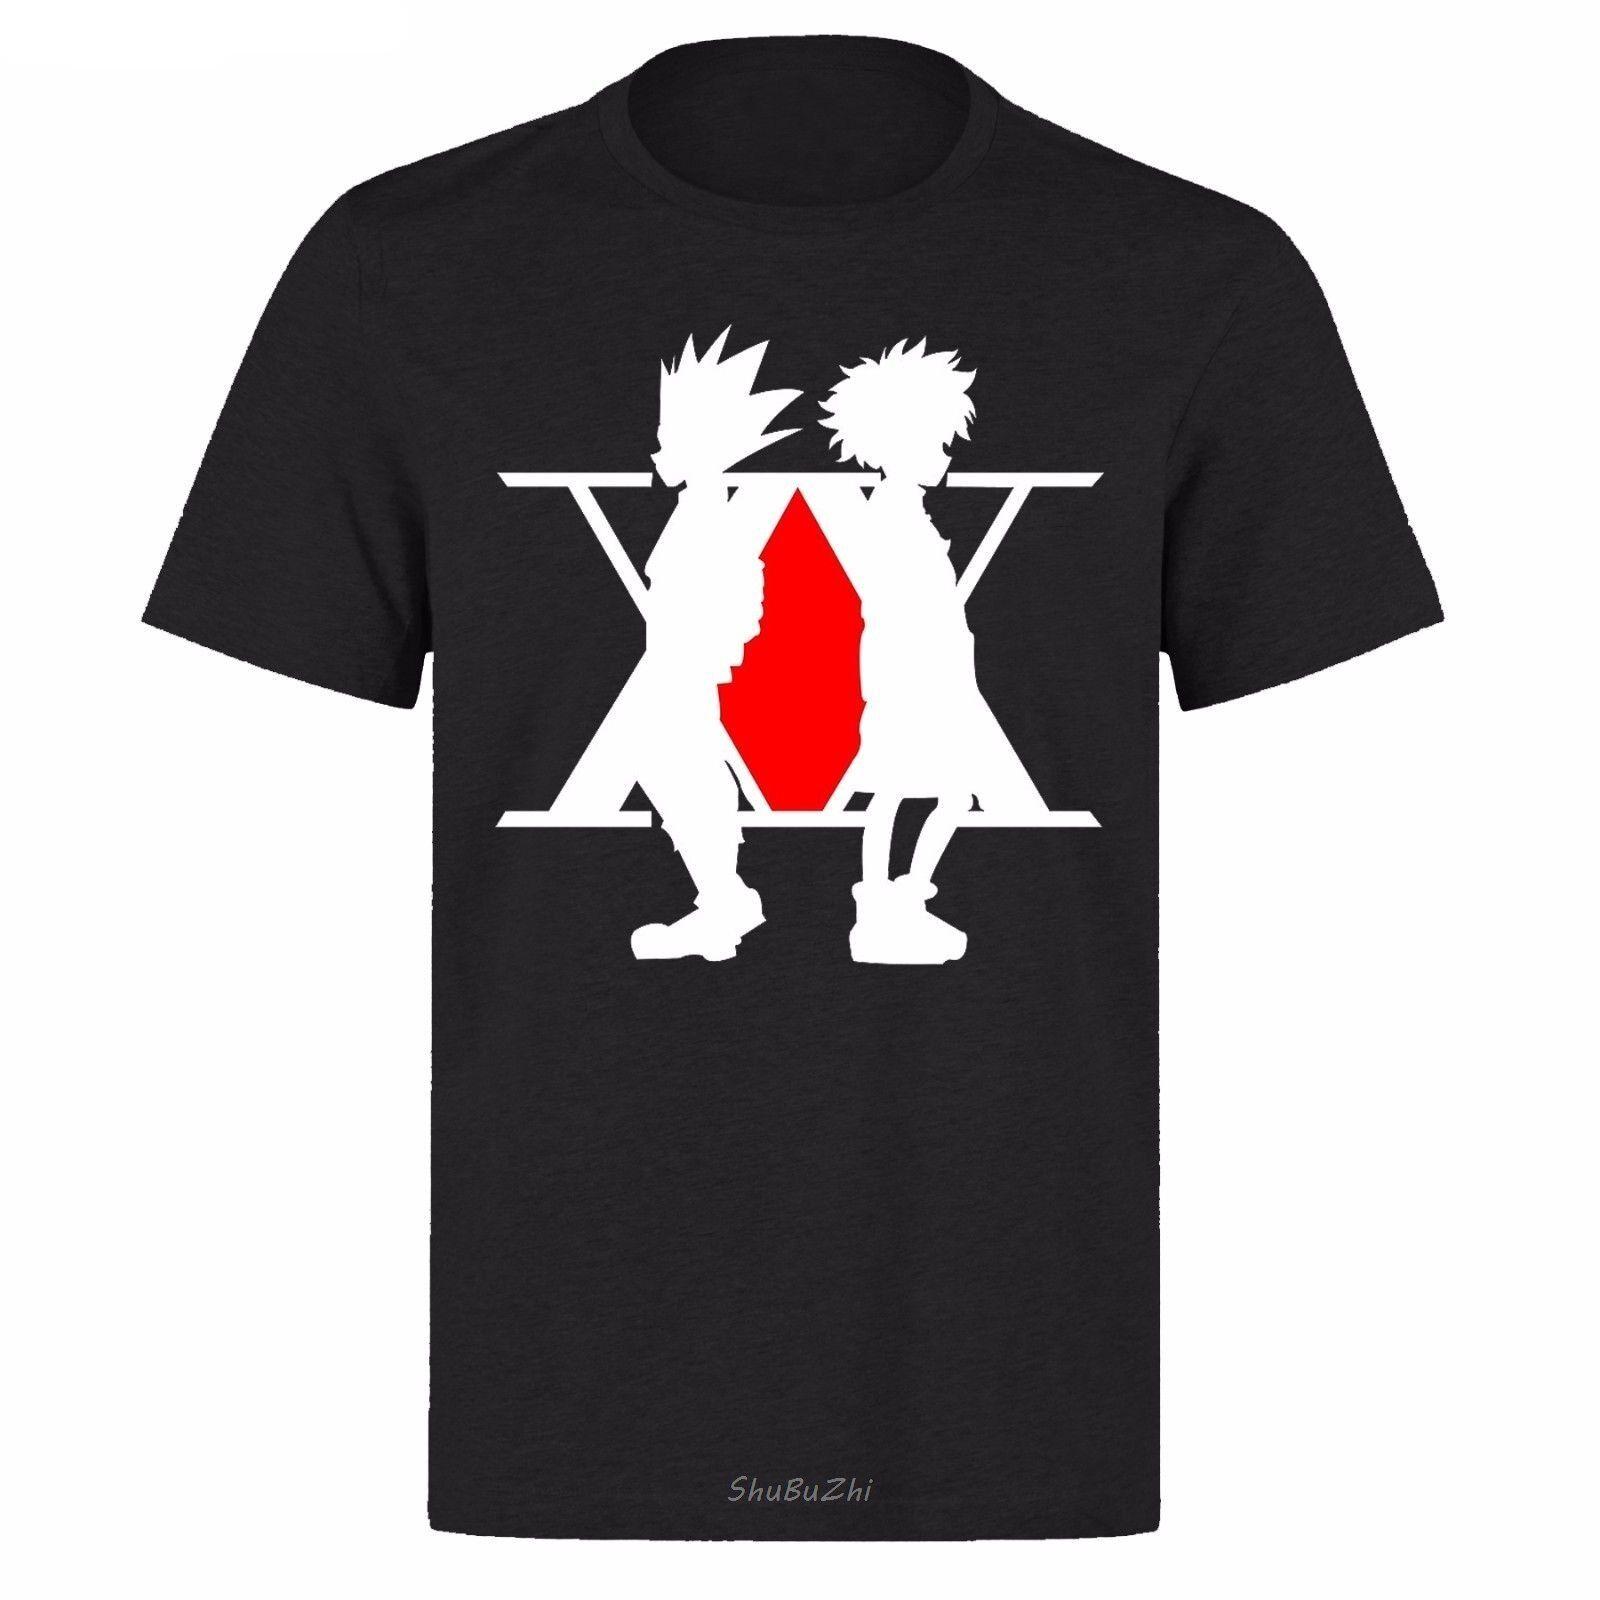 Hunter X Hunter – Gon and Killua T-Shirt (5 Colors) T-Shirts & Tank Tops